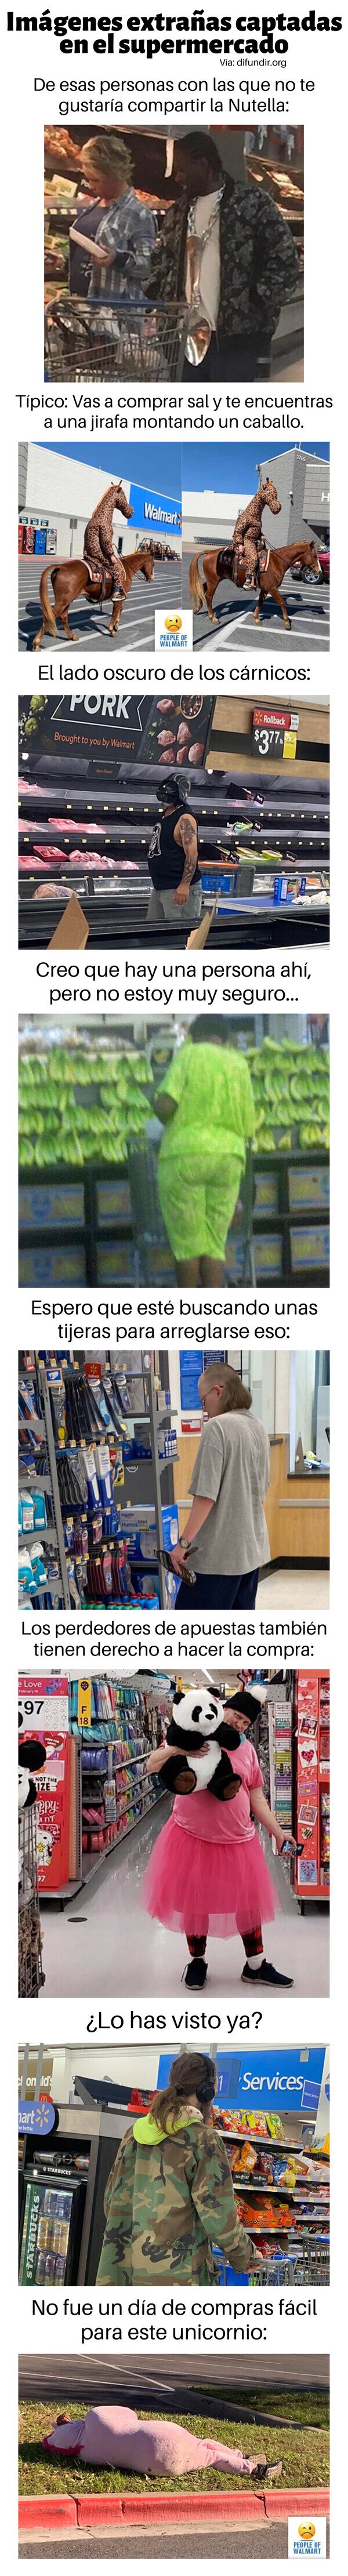 Meme_otros - Imágenes extrañas captadas en el supermercado